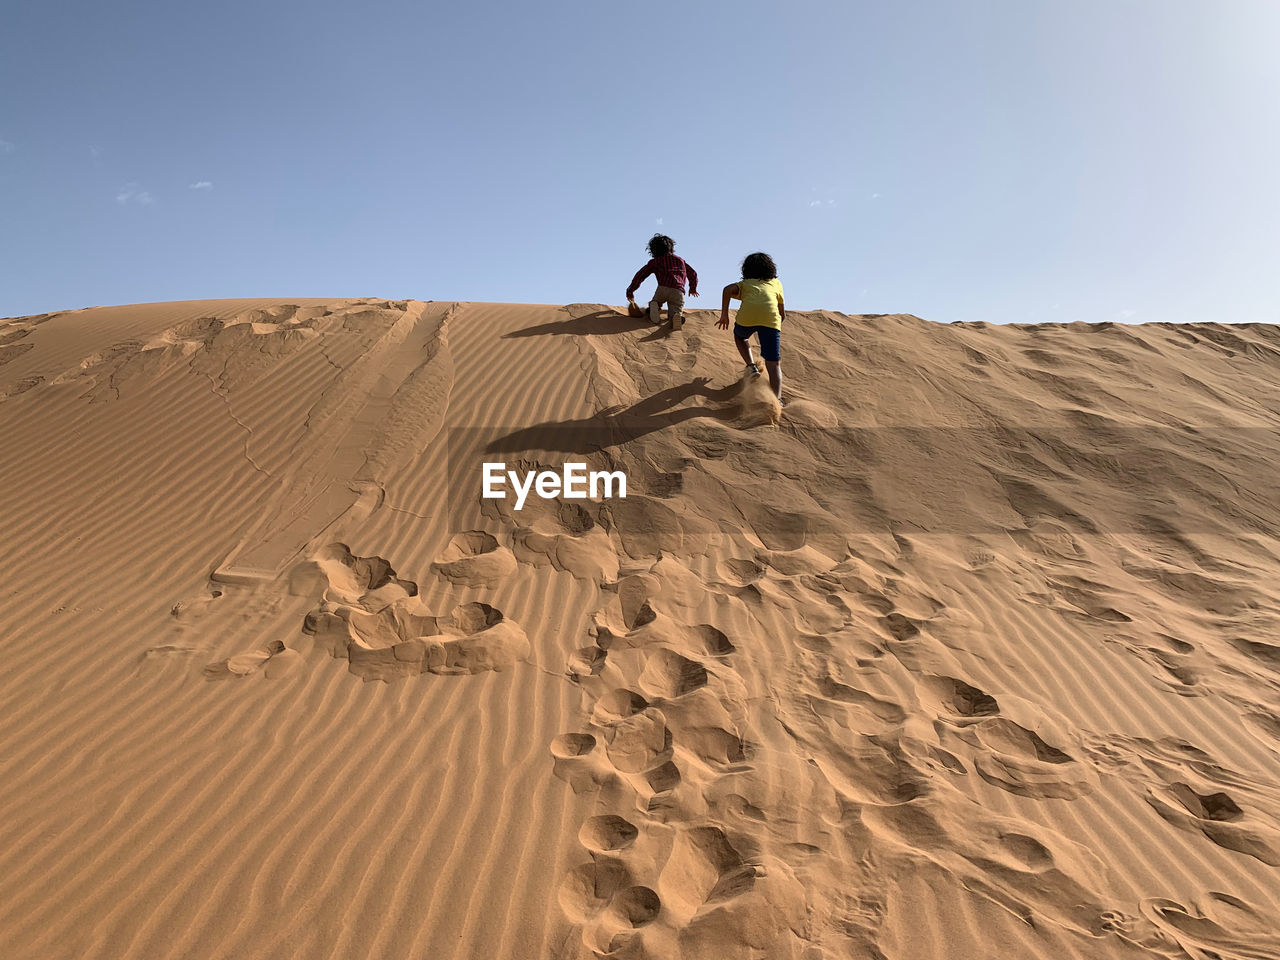 Kids walking on sand dune in desert against sky